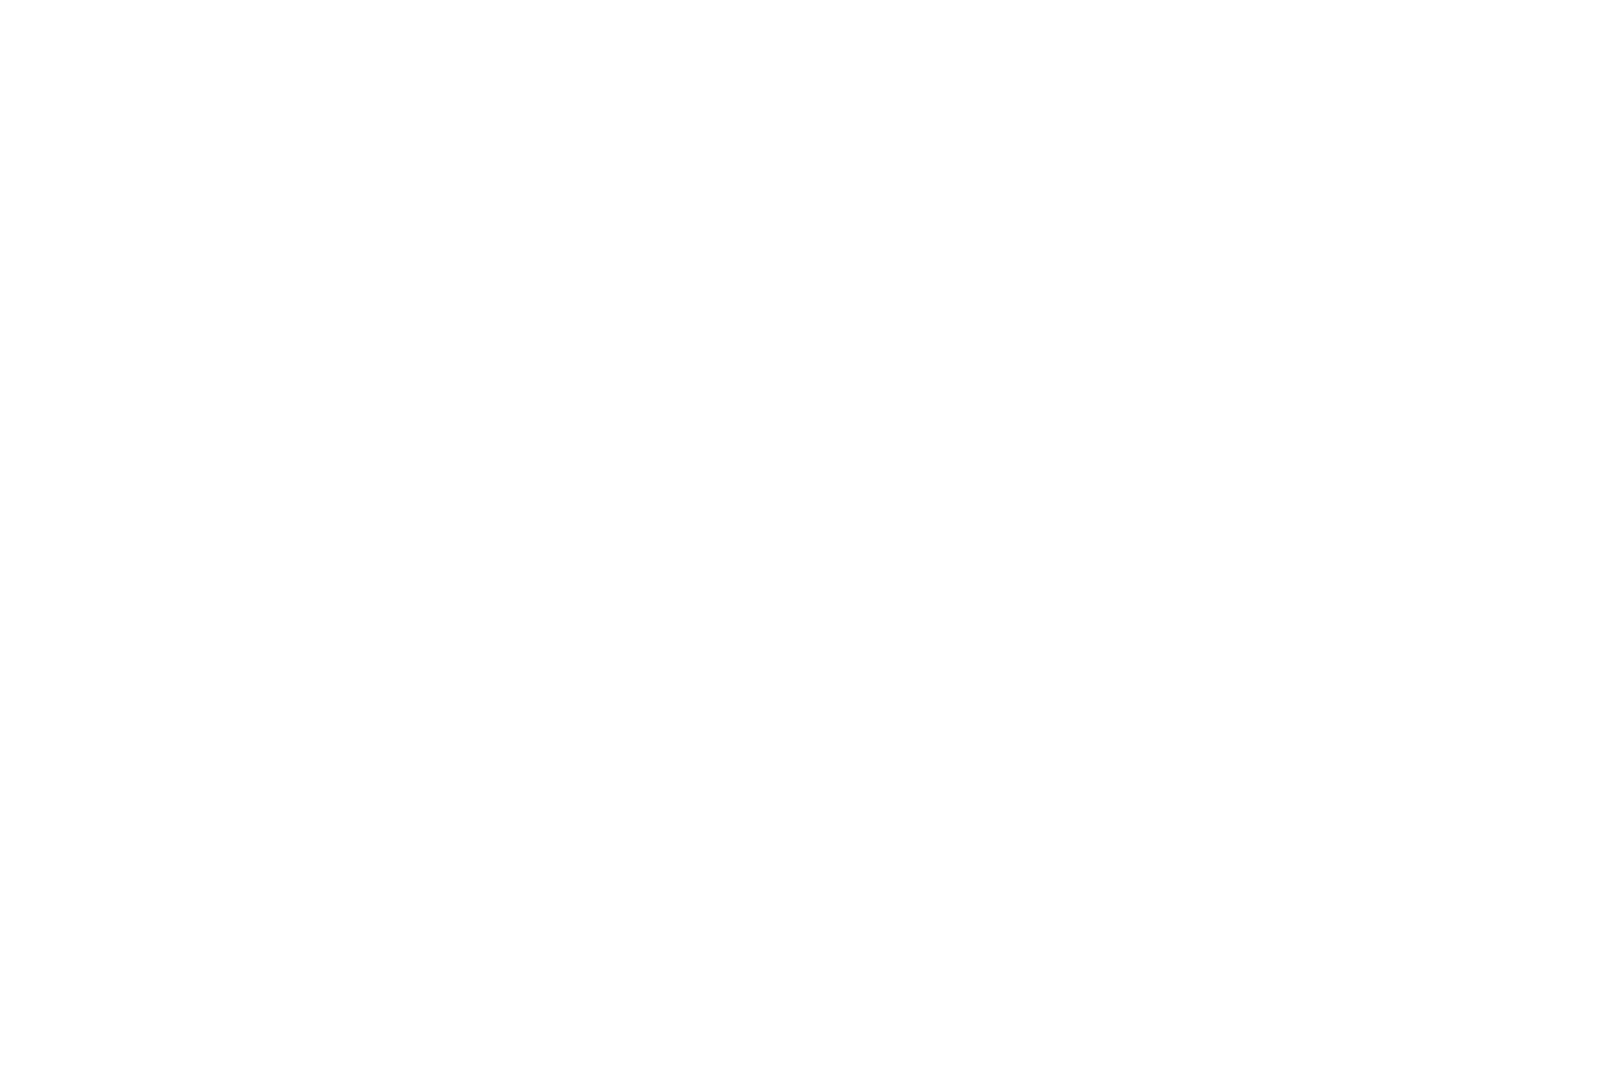 Image of Amazon logo